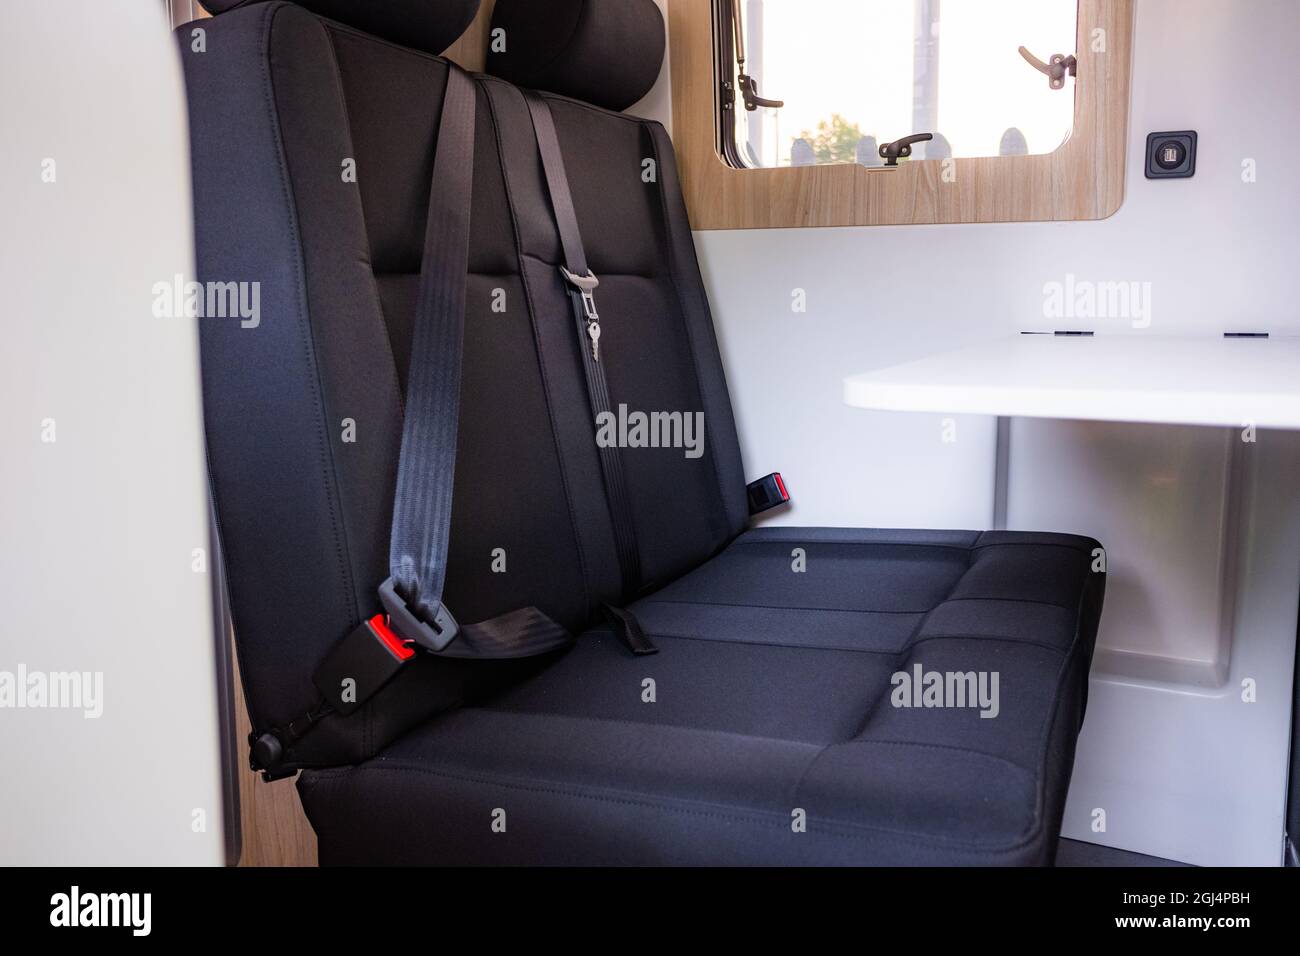 Gros plan sur les sièges noirs propres à l'intérieur d'une fourgonnette de camping contemporaine Banque D'Images